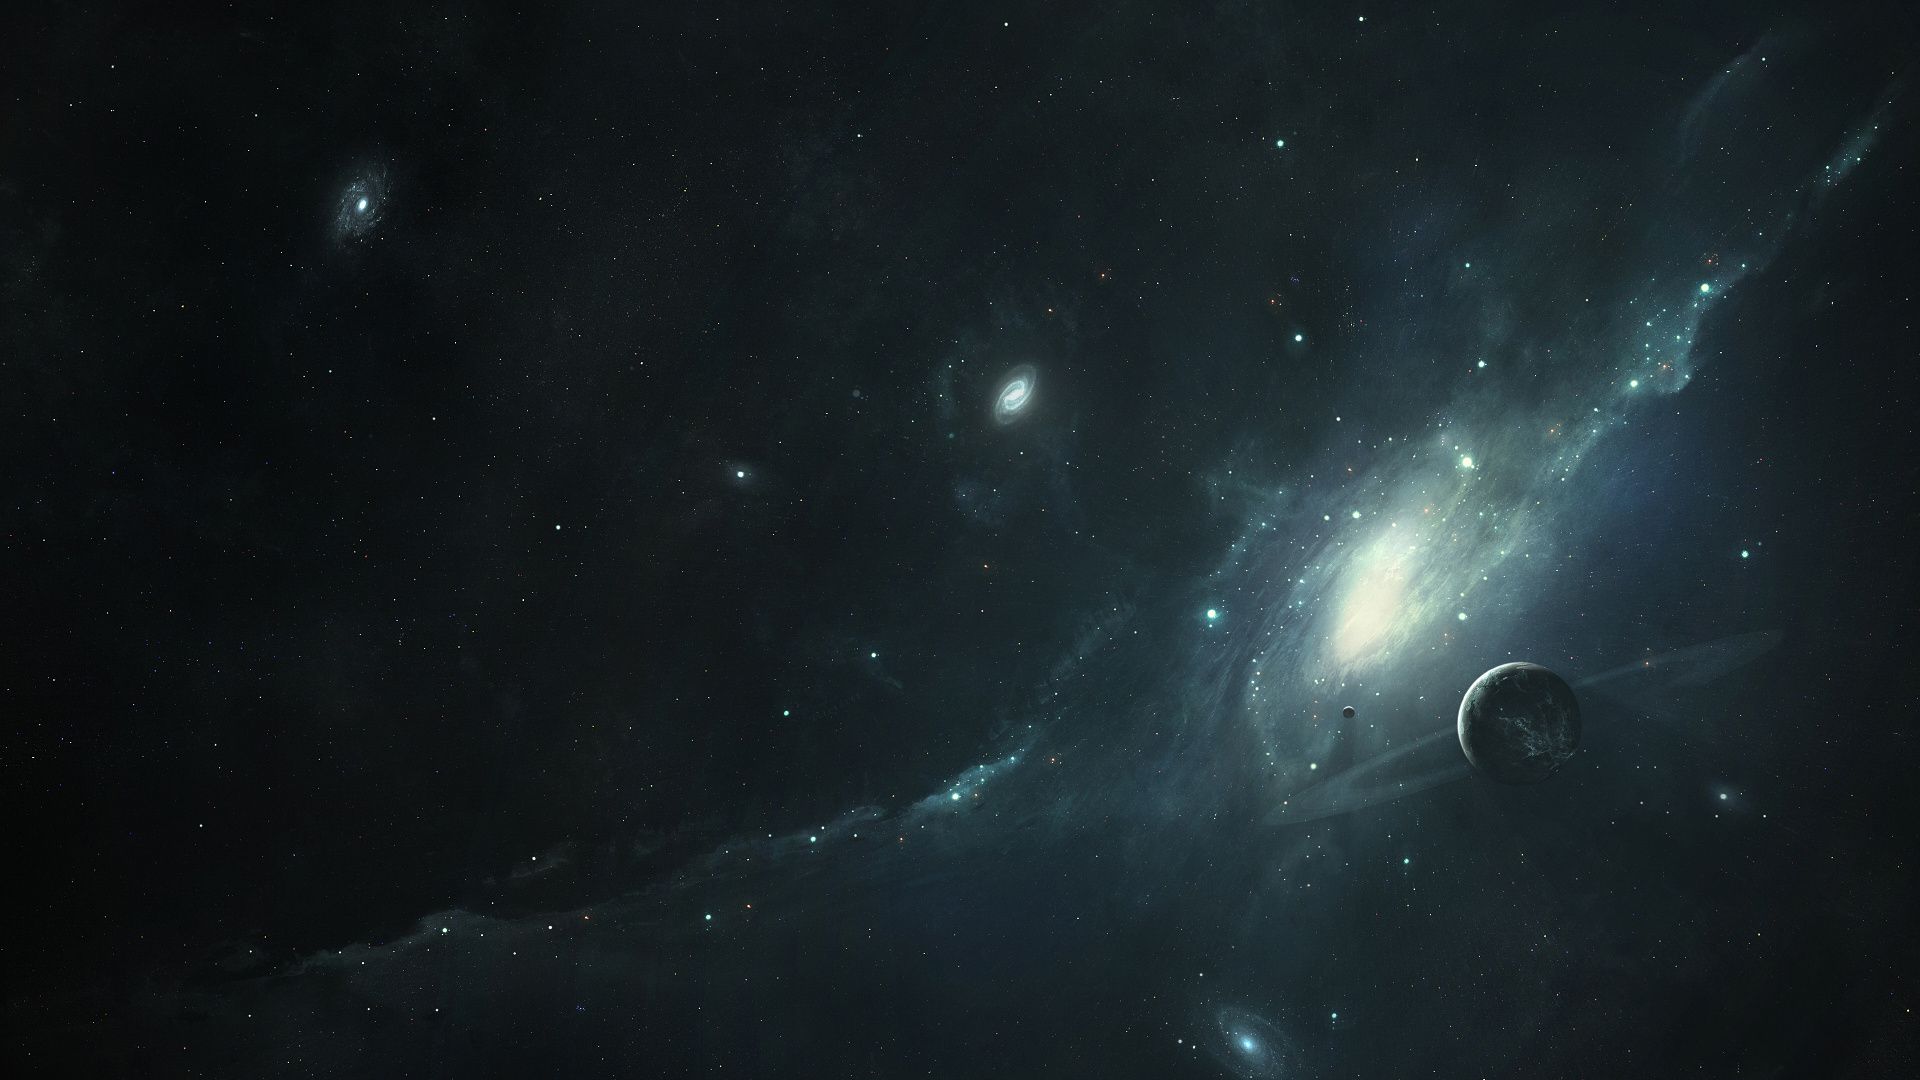 Vũ trụ đen tuyền bí, có tới hàng tỷ ngôi sao và bức tranh hoàn hảo của các hành tinh và sao chổi. Hãy đắm mình trong sự lãng mạn của không gian vô cùng độc đáo này!